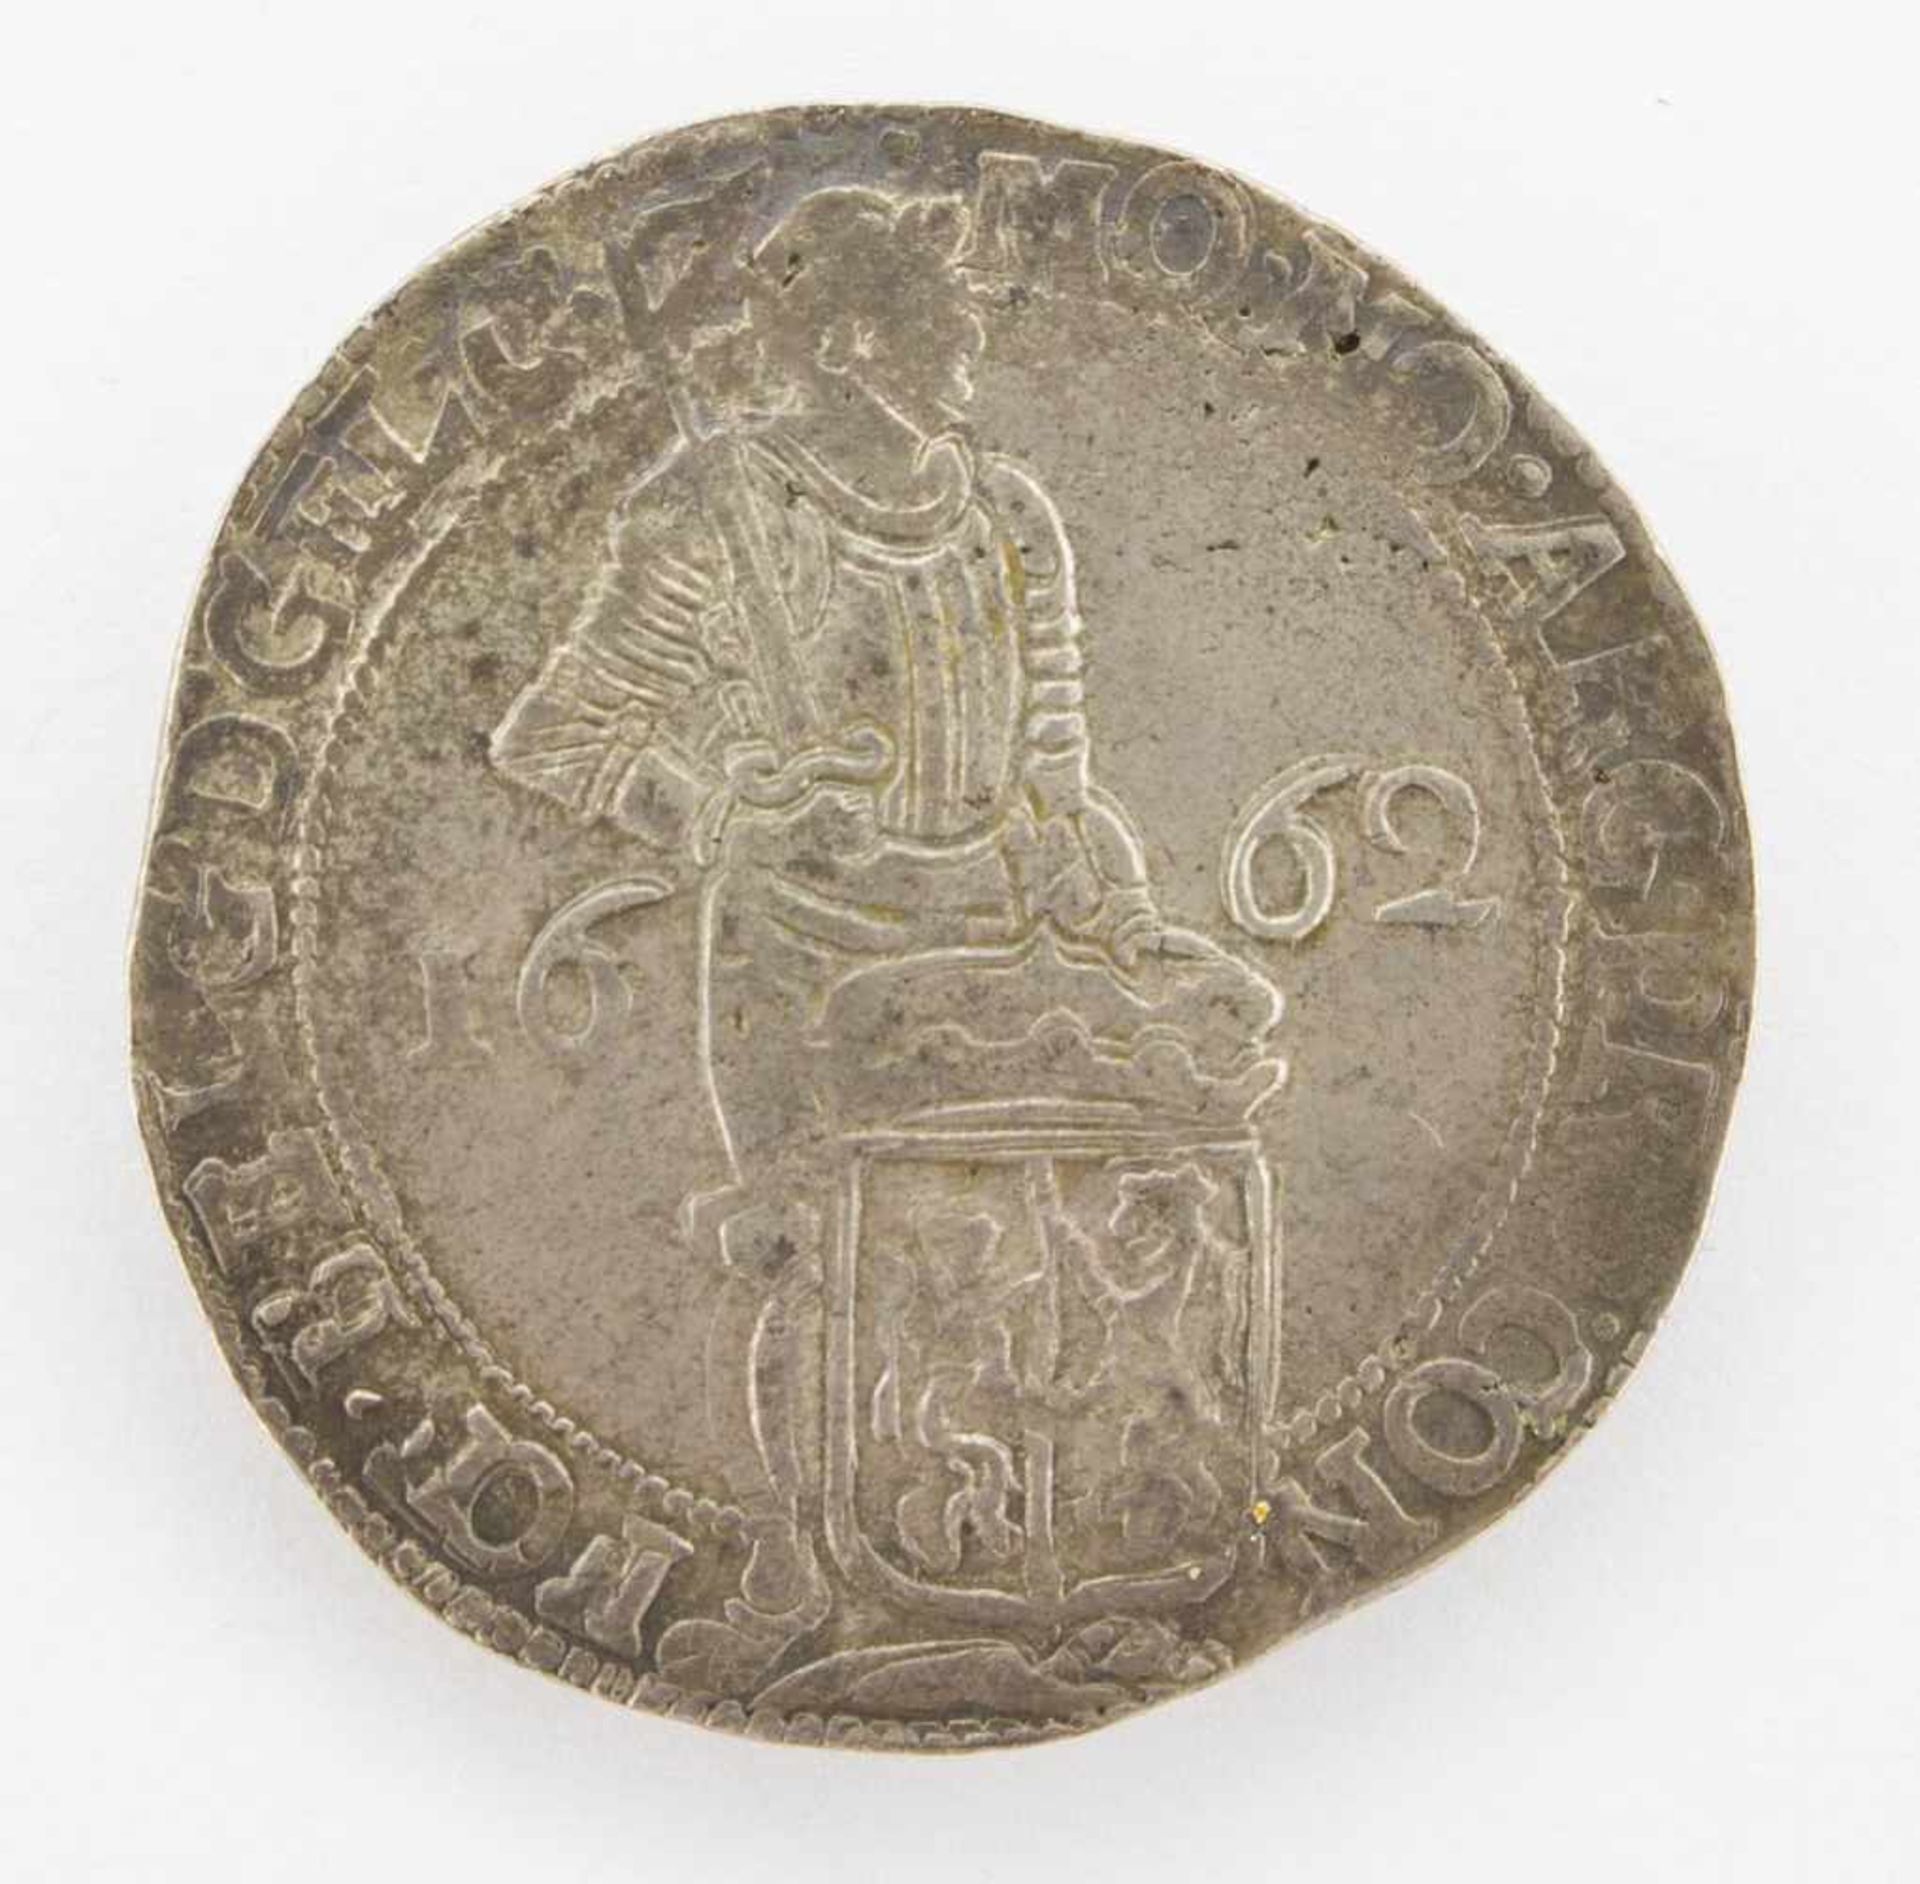 SilberdukatenNiederlande Provinz 1662, Ritter mit Wappenschild, Silber, ss